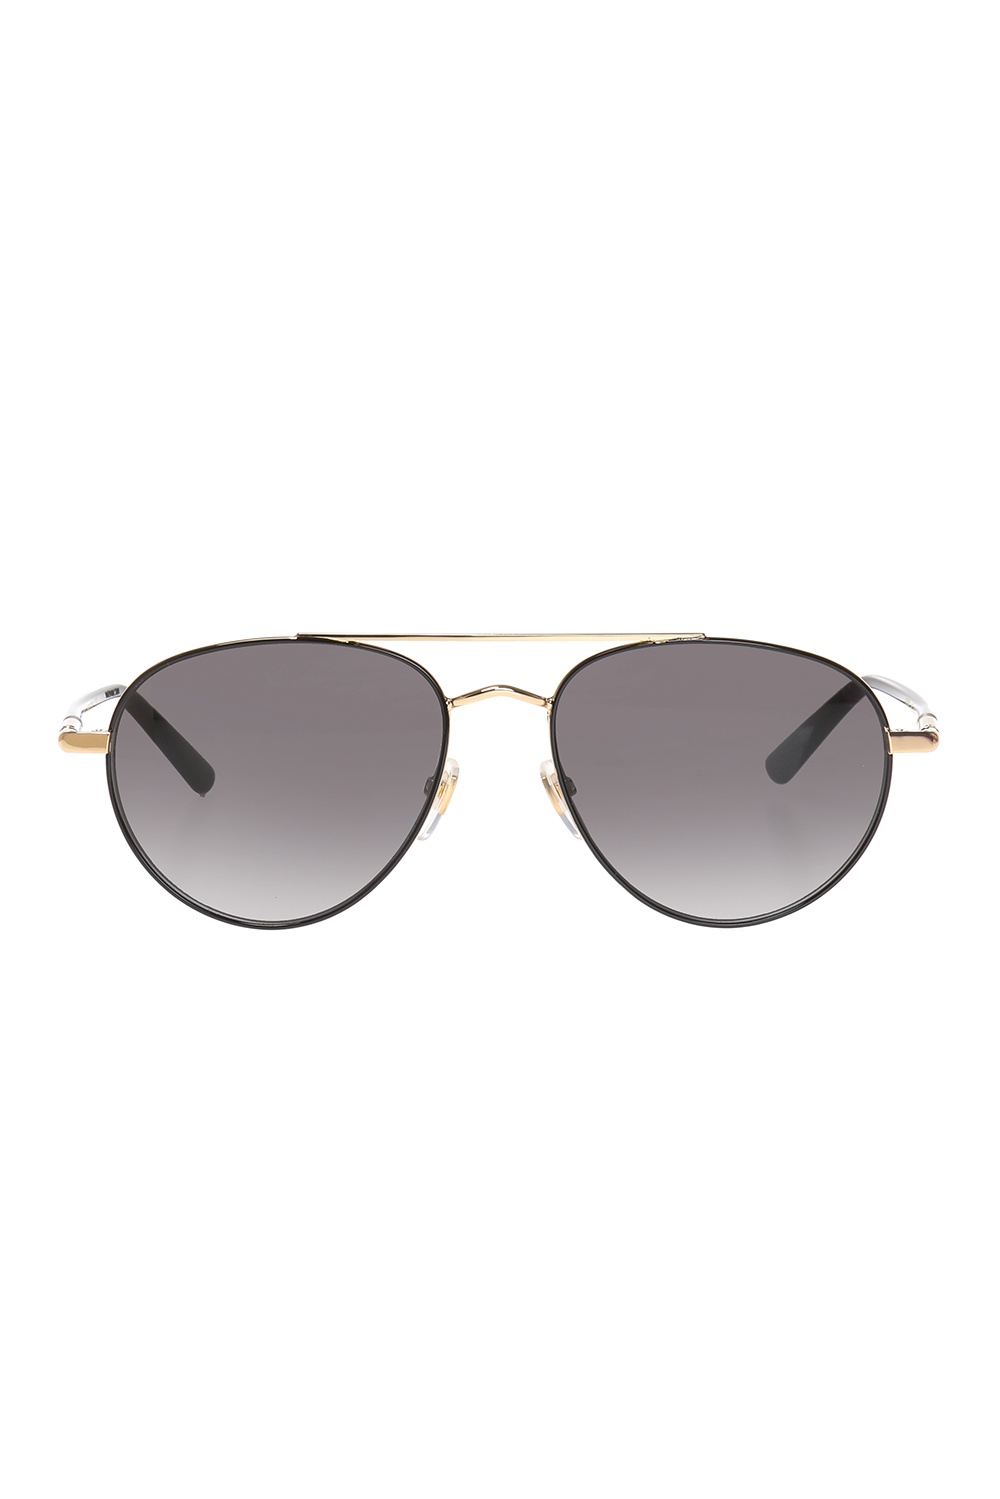 Gucci Sunglasses with 'Sylvie Web' stripes | Men's Accessorie | Vitkac